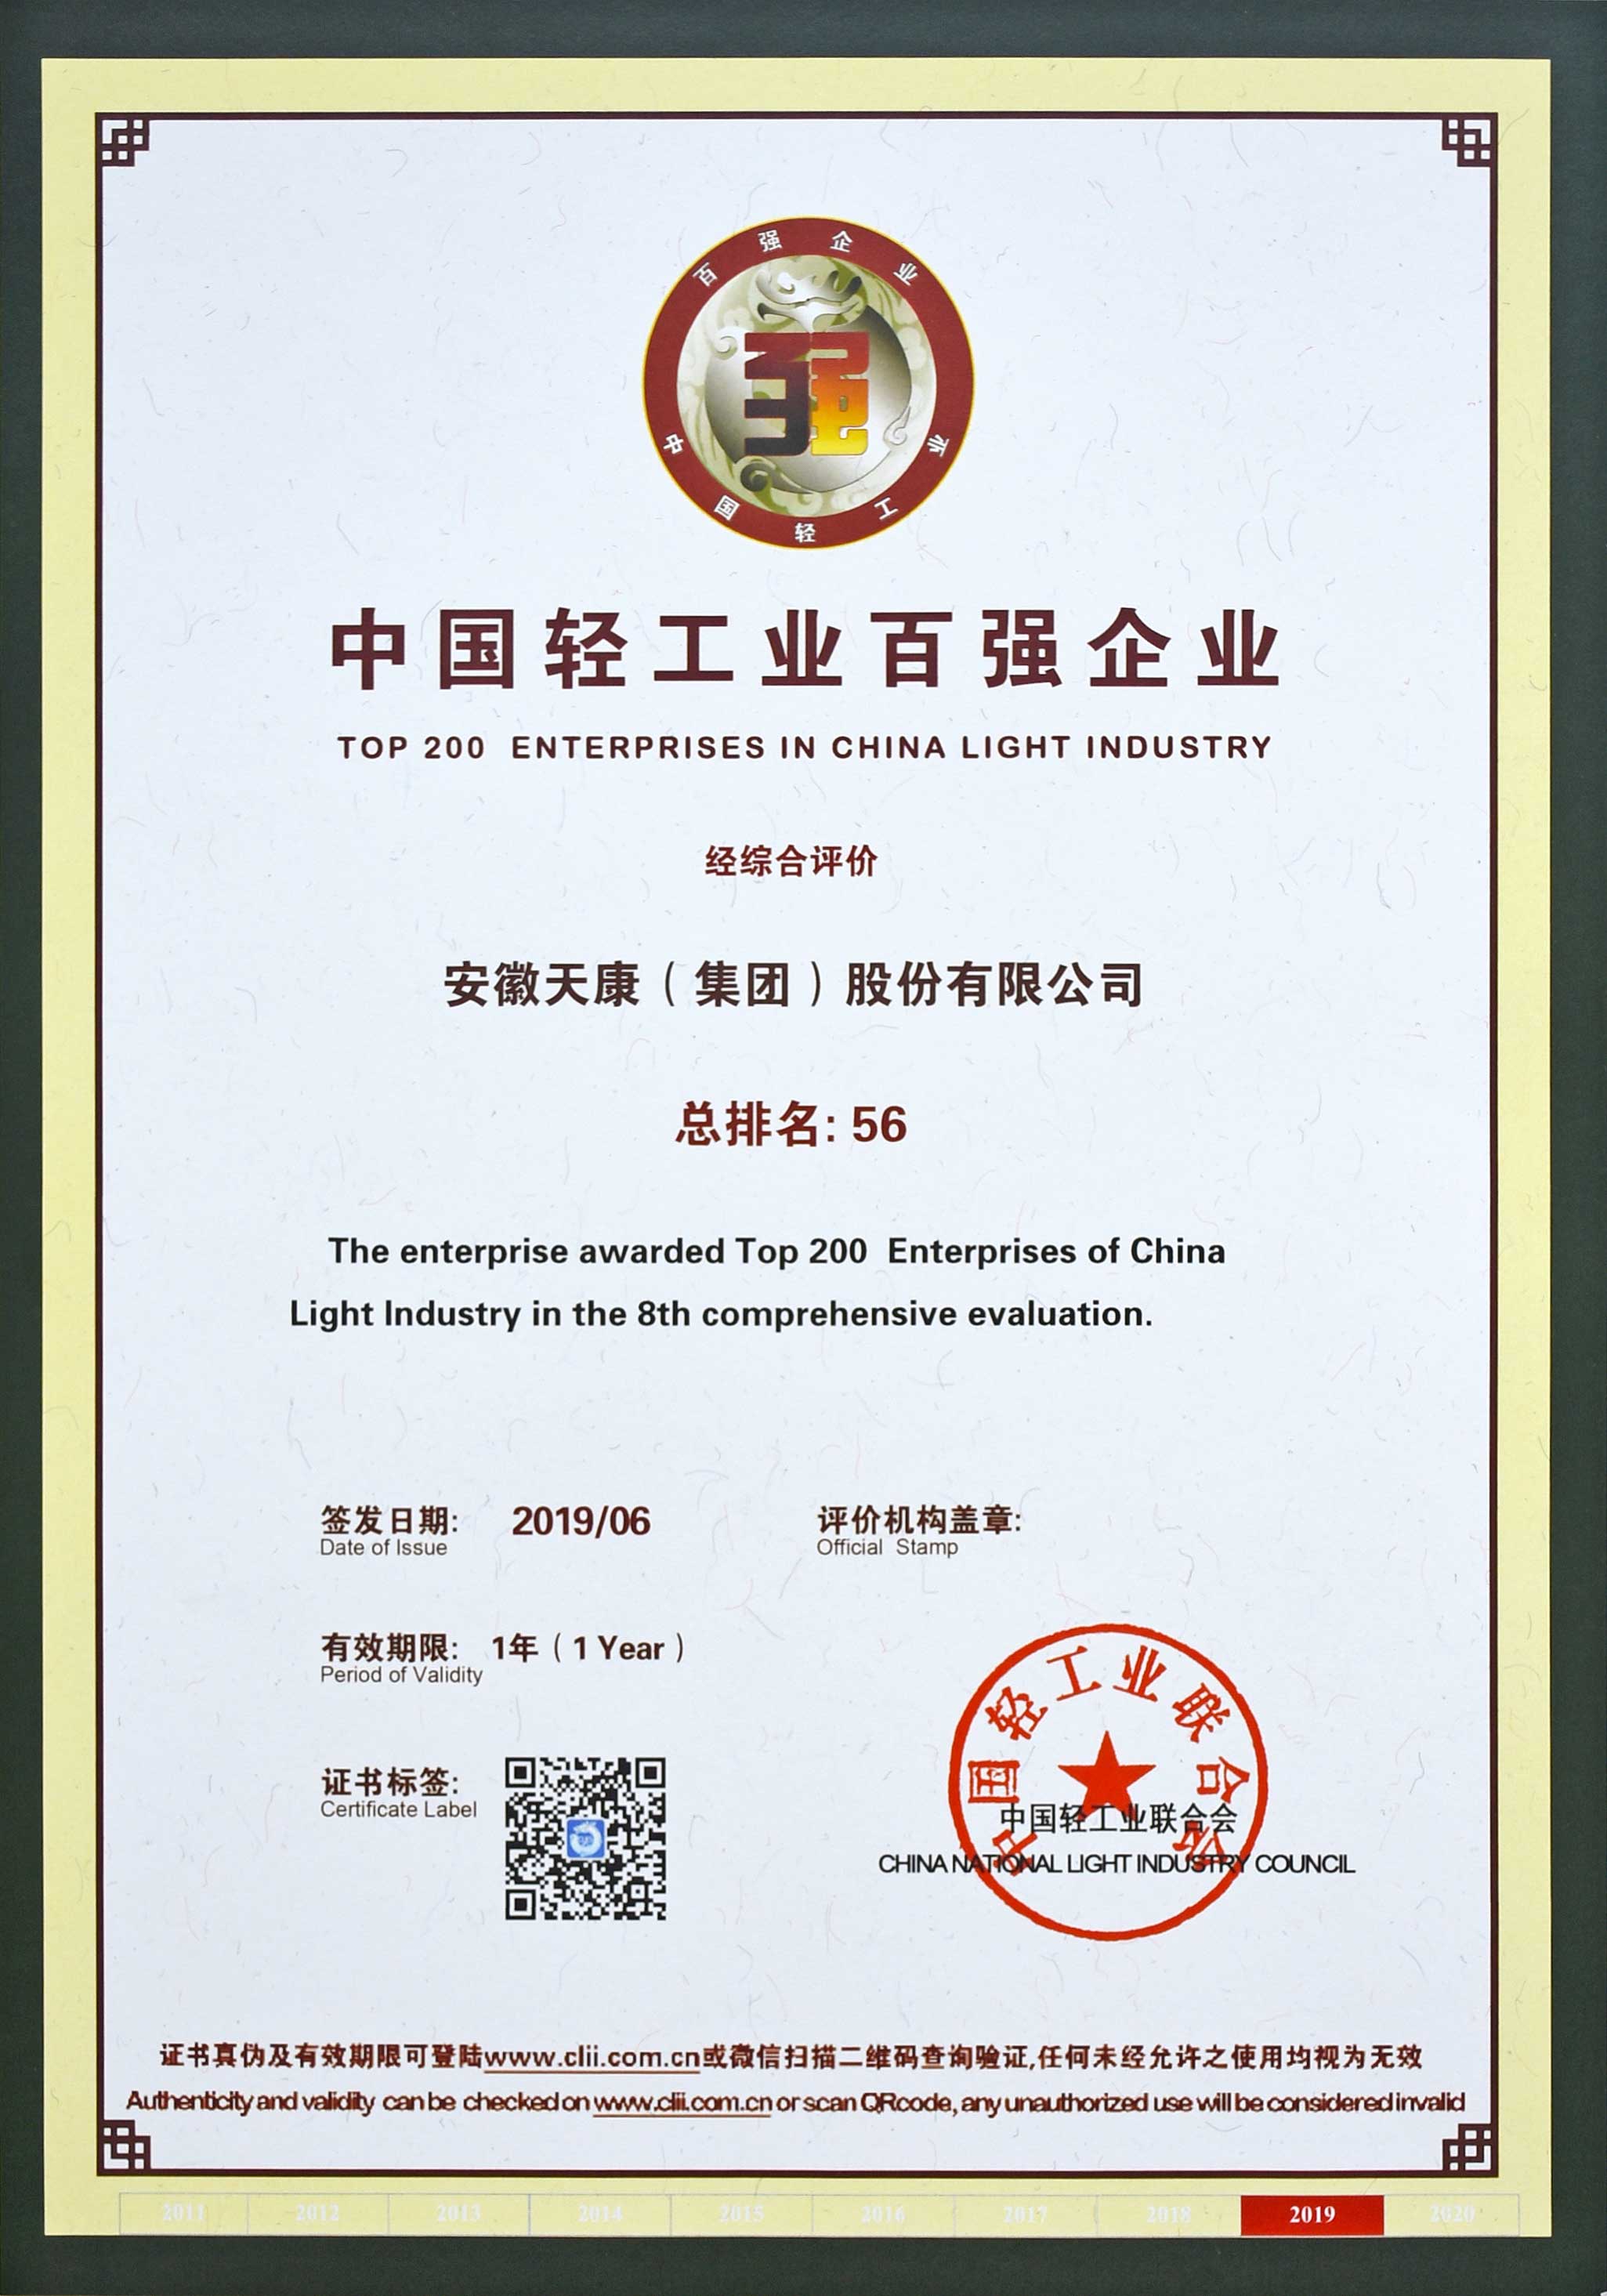 安徽天康集团再次荣登中国轻工业百强企业榜首。
